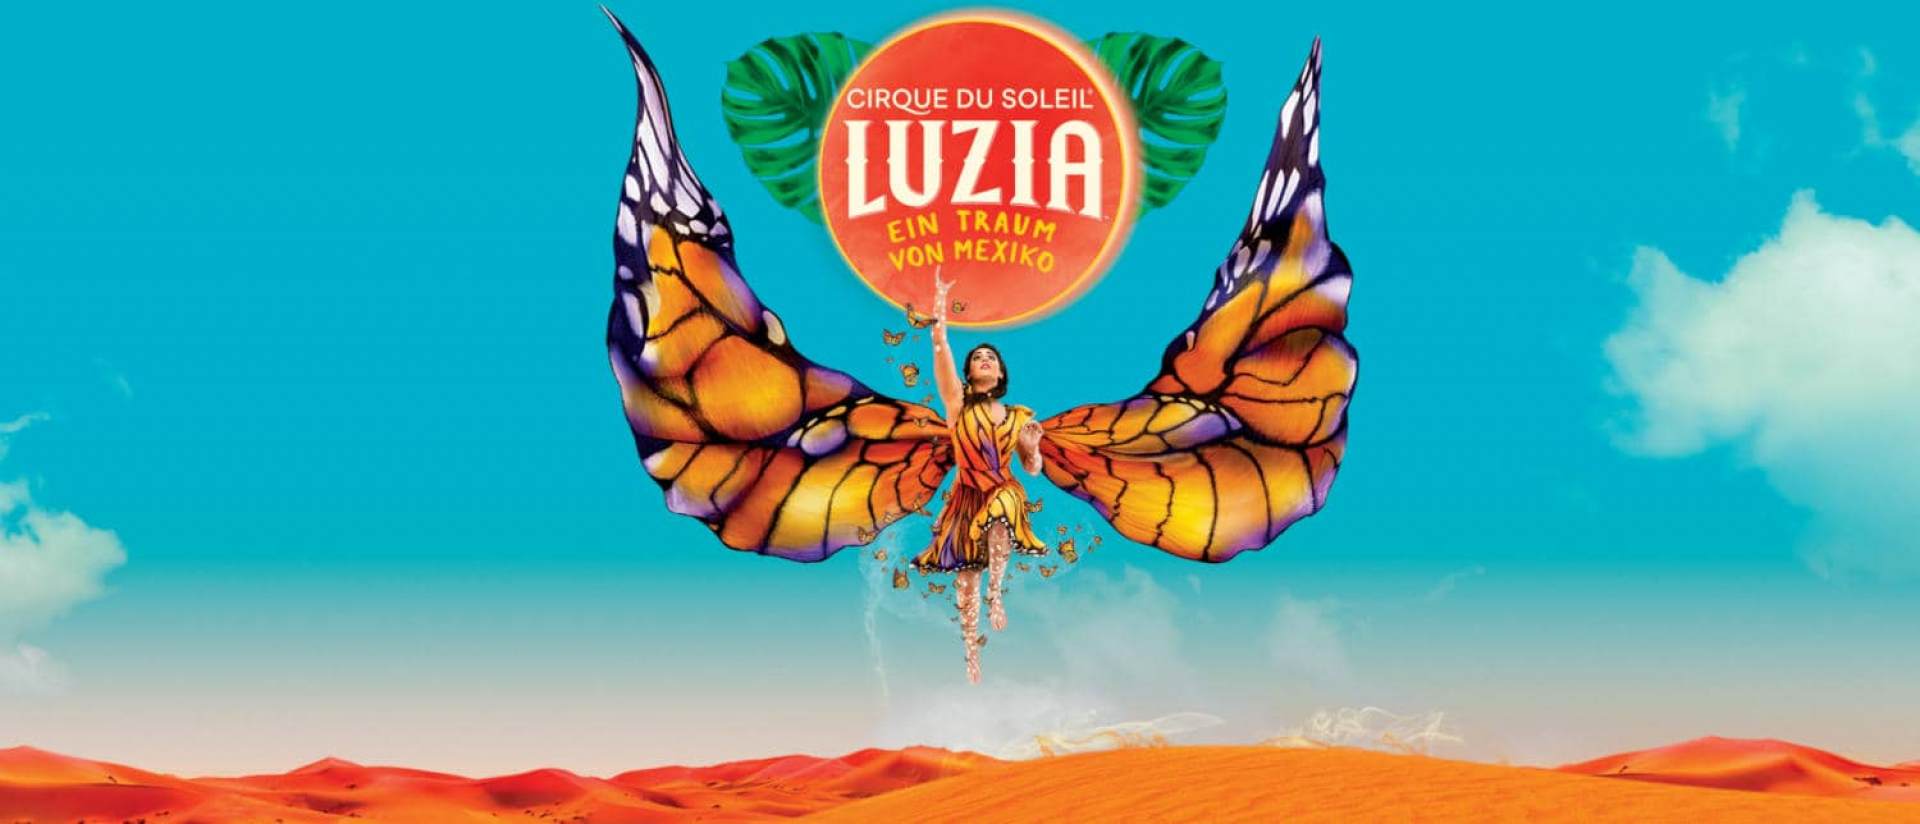 シルク・ド・ソレイユ ( Cirque du Soleil ) - LUZIA